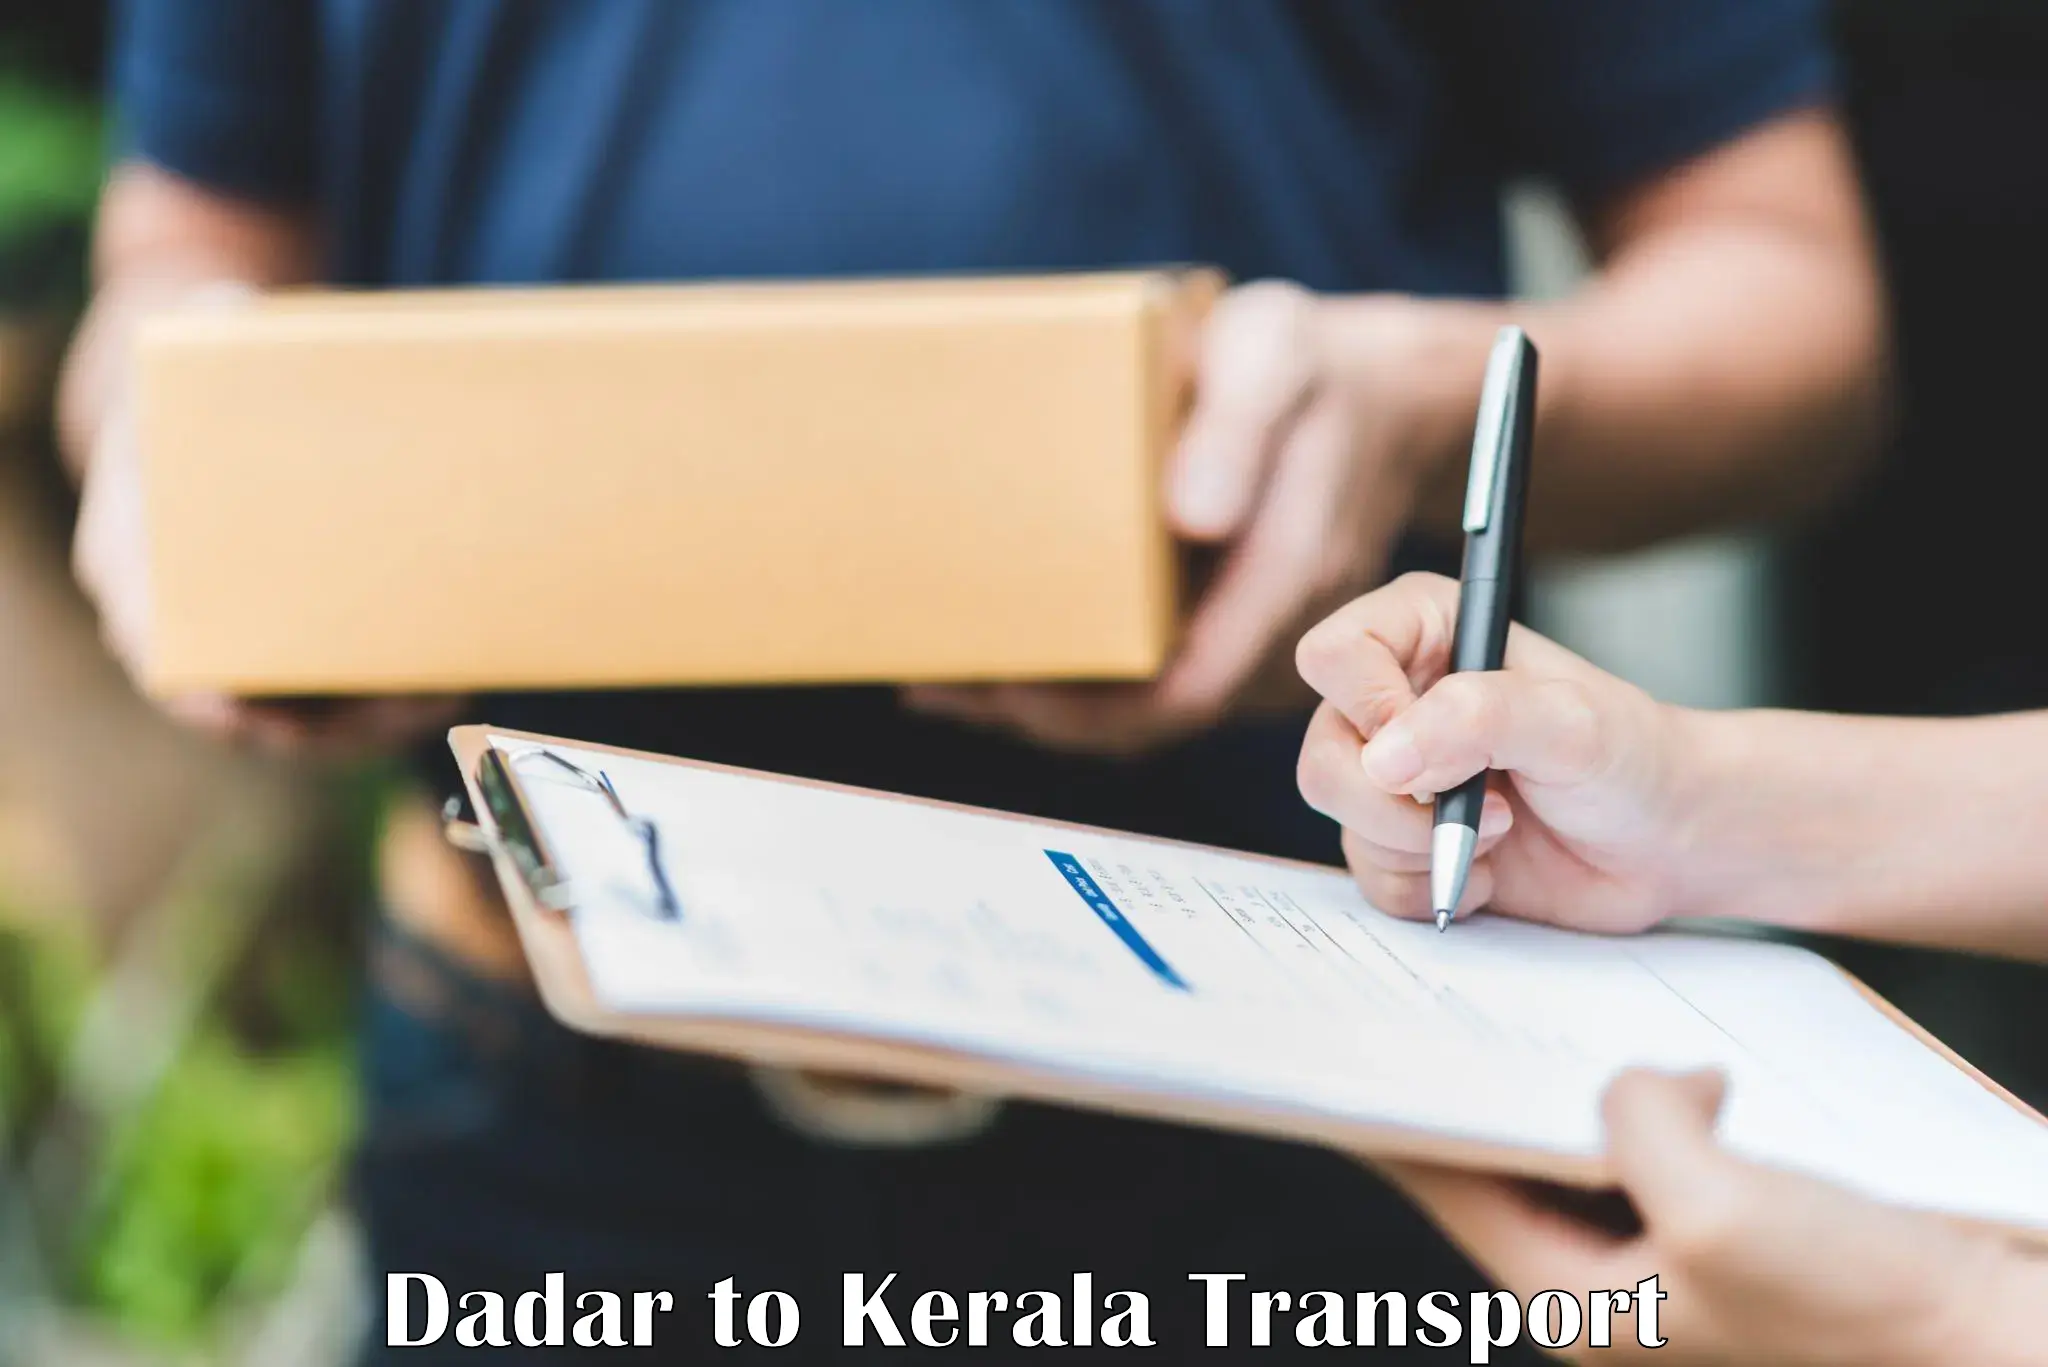 Shipping services Dadar to Kollam